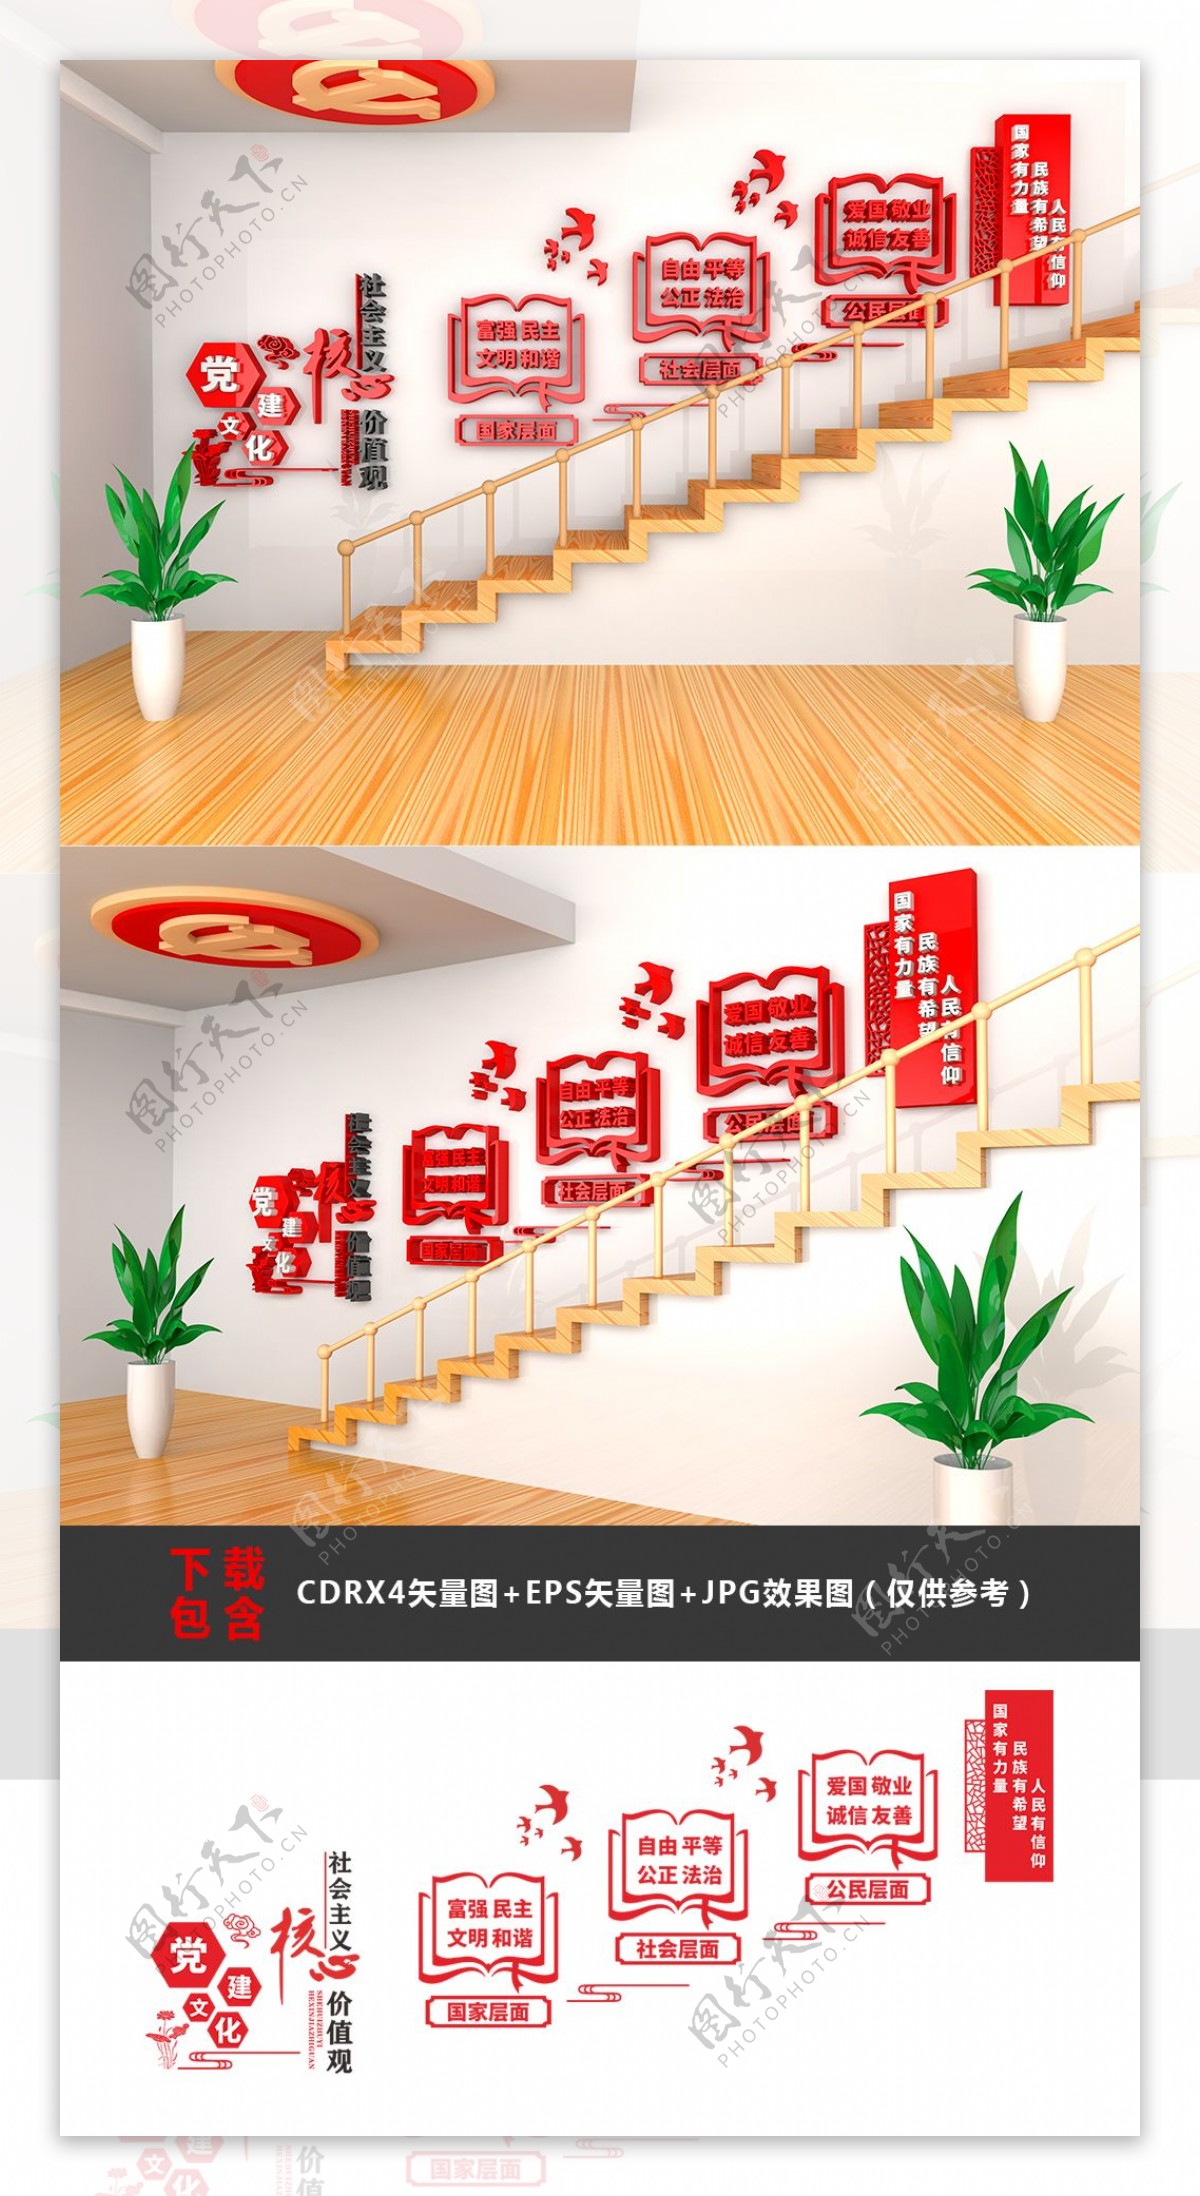 大型3D立体社会主义核心价值观楼梯文化墙